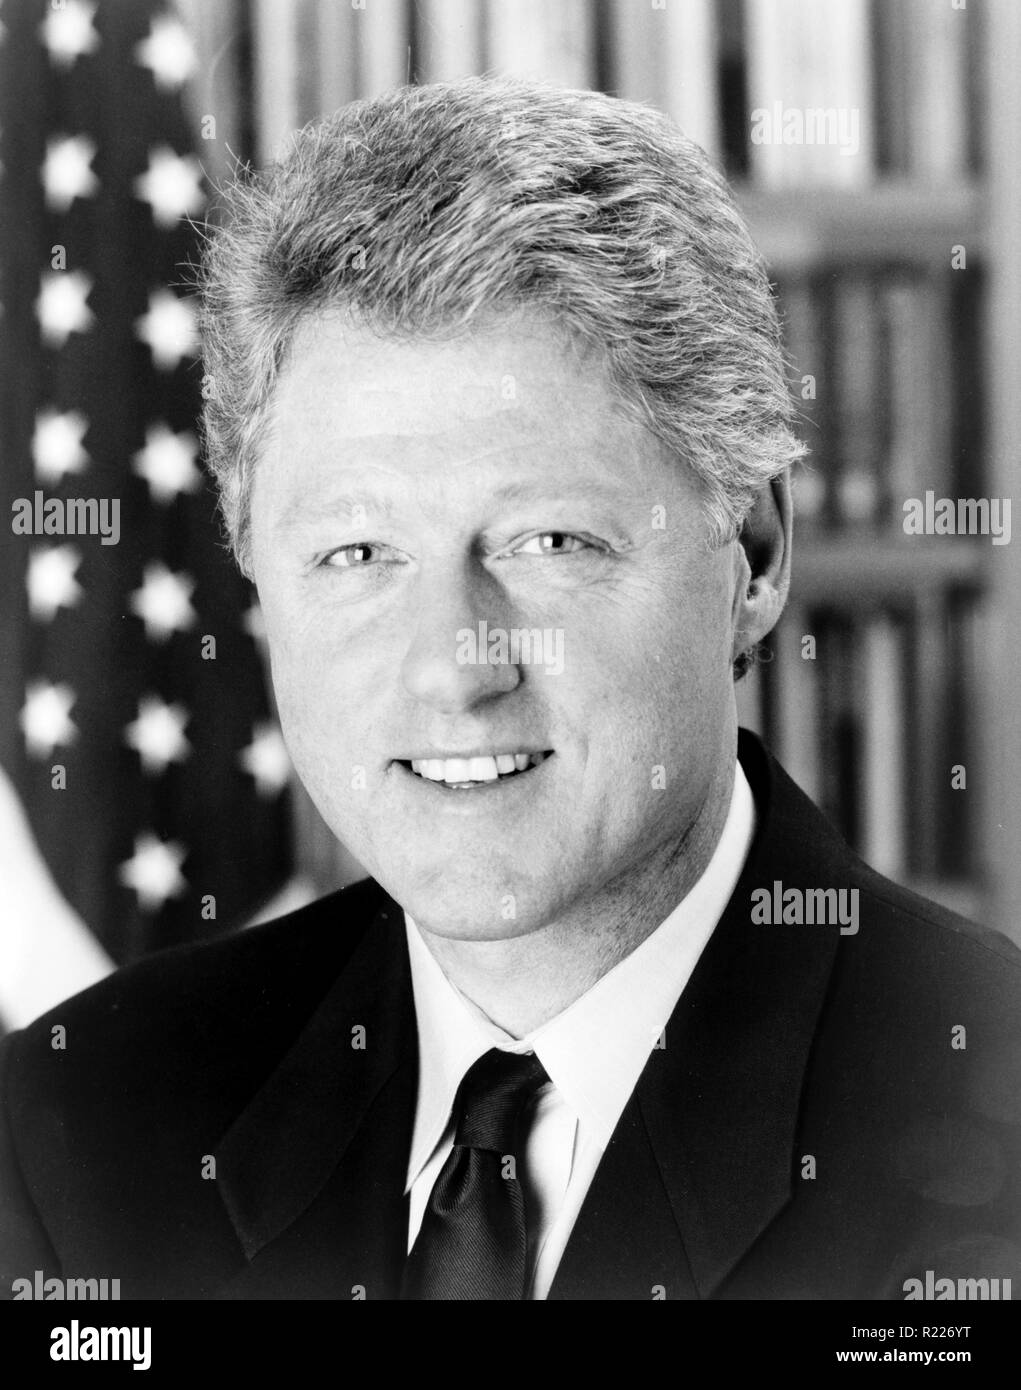 William Jefferson "Bill" Clinton (né en 1946) homme politique américain, et entre 1993 à 2001 Président de l'United States Banque D'Images